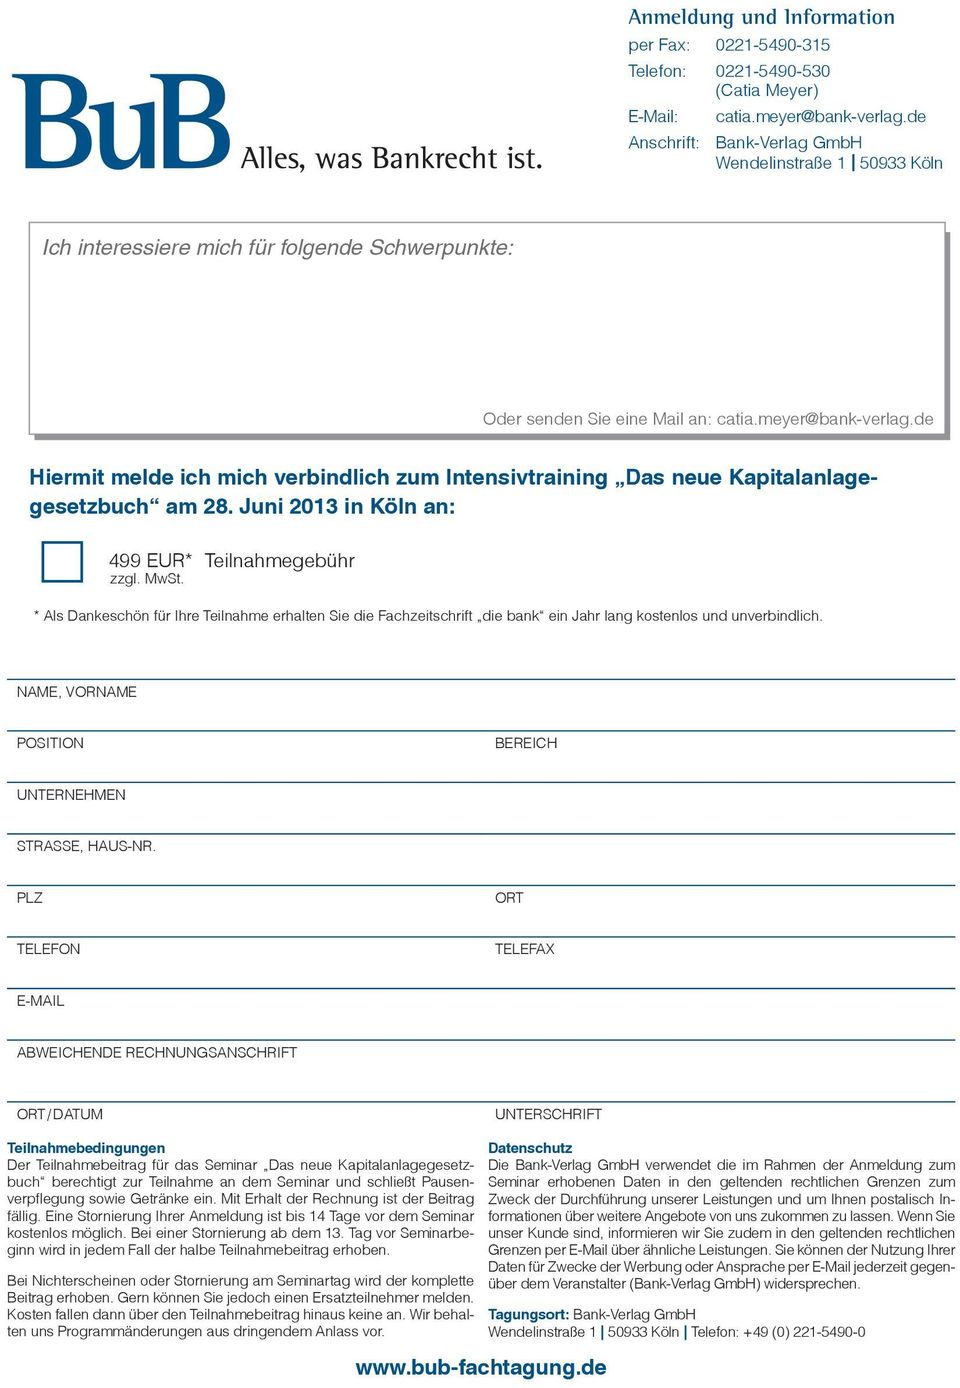 de Hiermit melde ich mich verbindlich zum Intensivtraining Das neue Kapitalanlagegesetzbuch am 28. Juni 2013 in Köln an: 499 EUR* Teilnahmegebühr zzgl. MwSt.